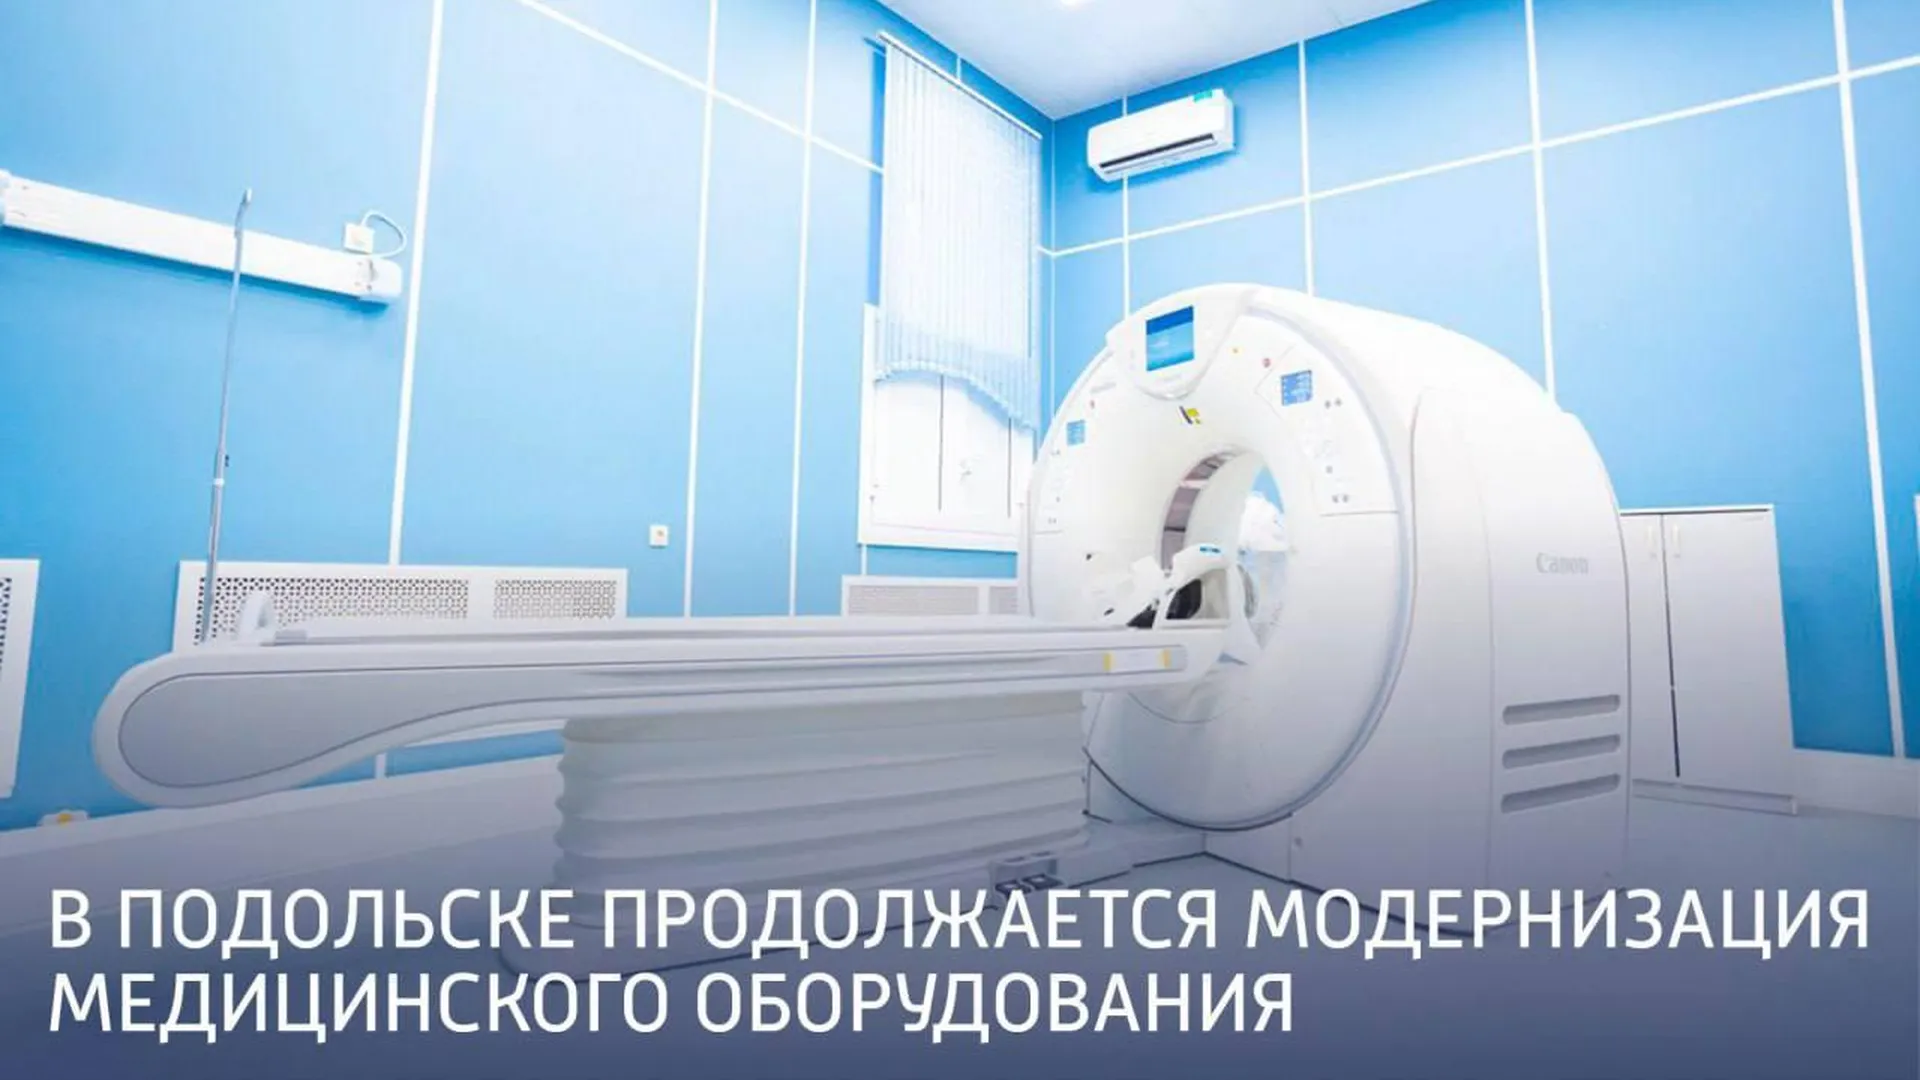 Модернизацию медицинского оборудования продолжают проводить в Подольске